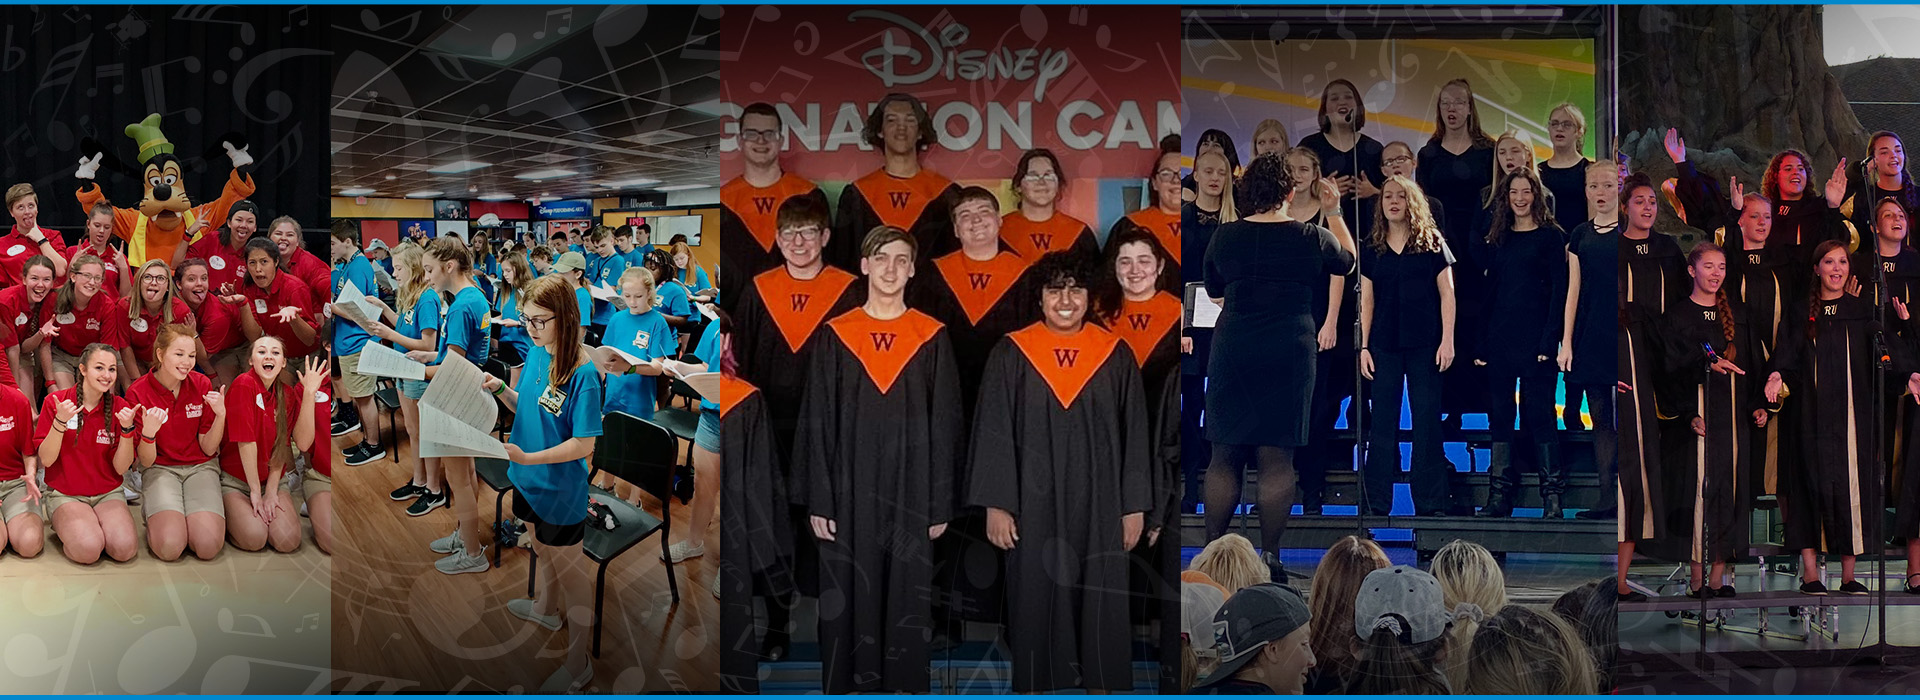 Disney Imagination Campus orchestra travel